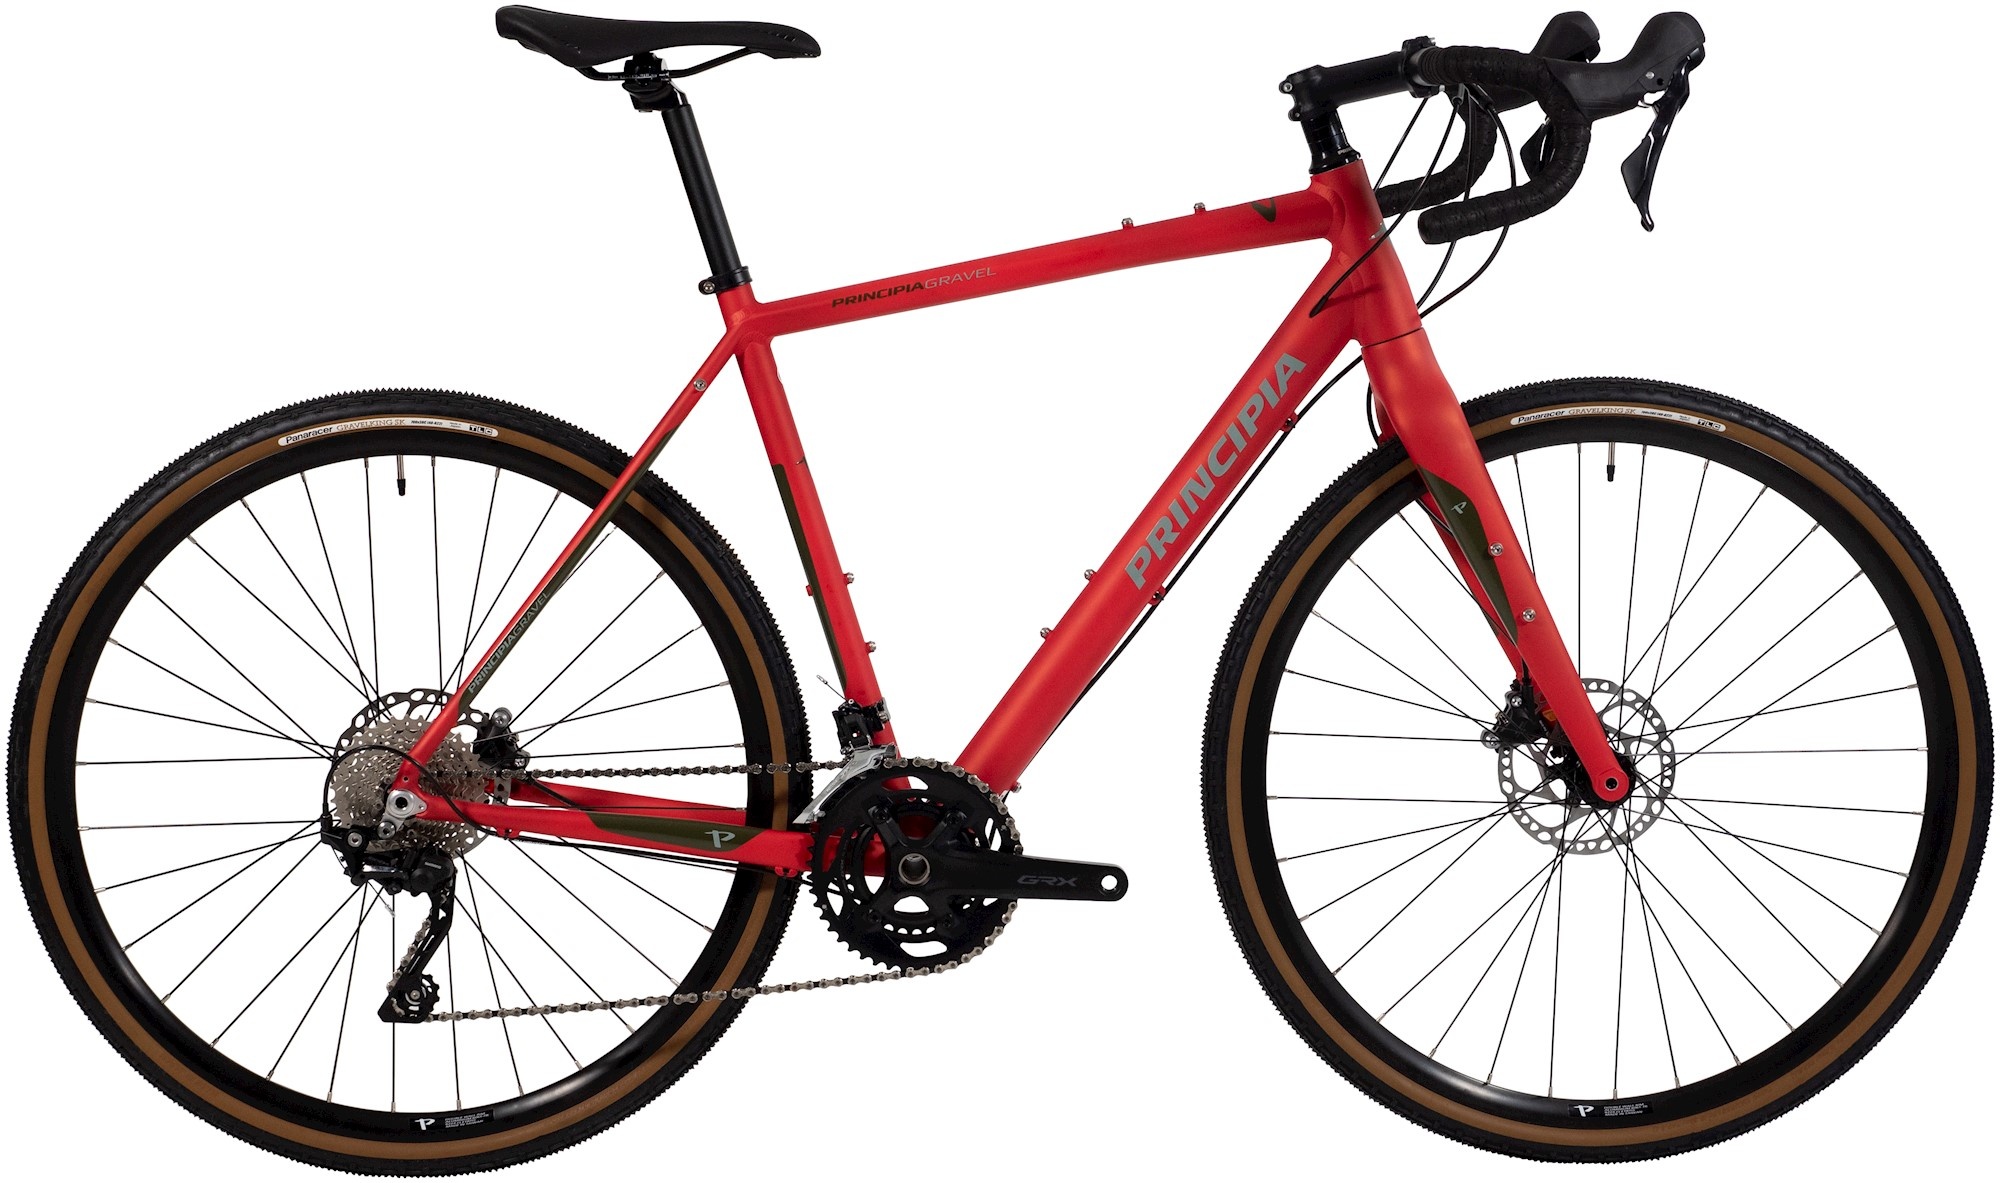 Cykler - Racercykler - Principia Gravel 30 Alu GRX RX400 2023 - Rød